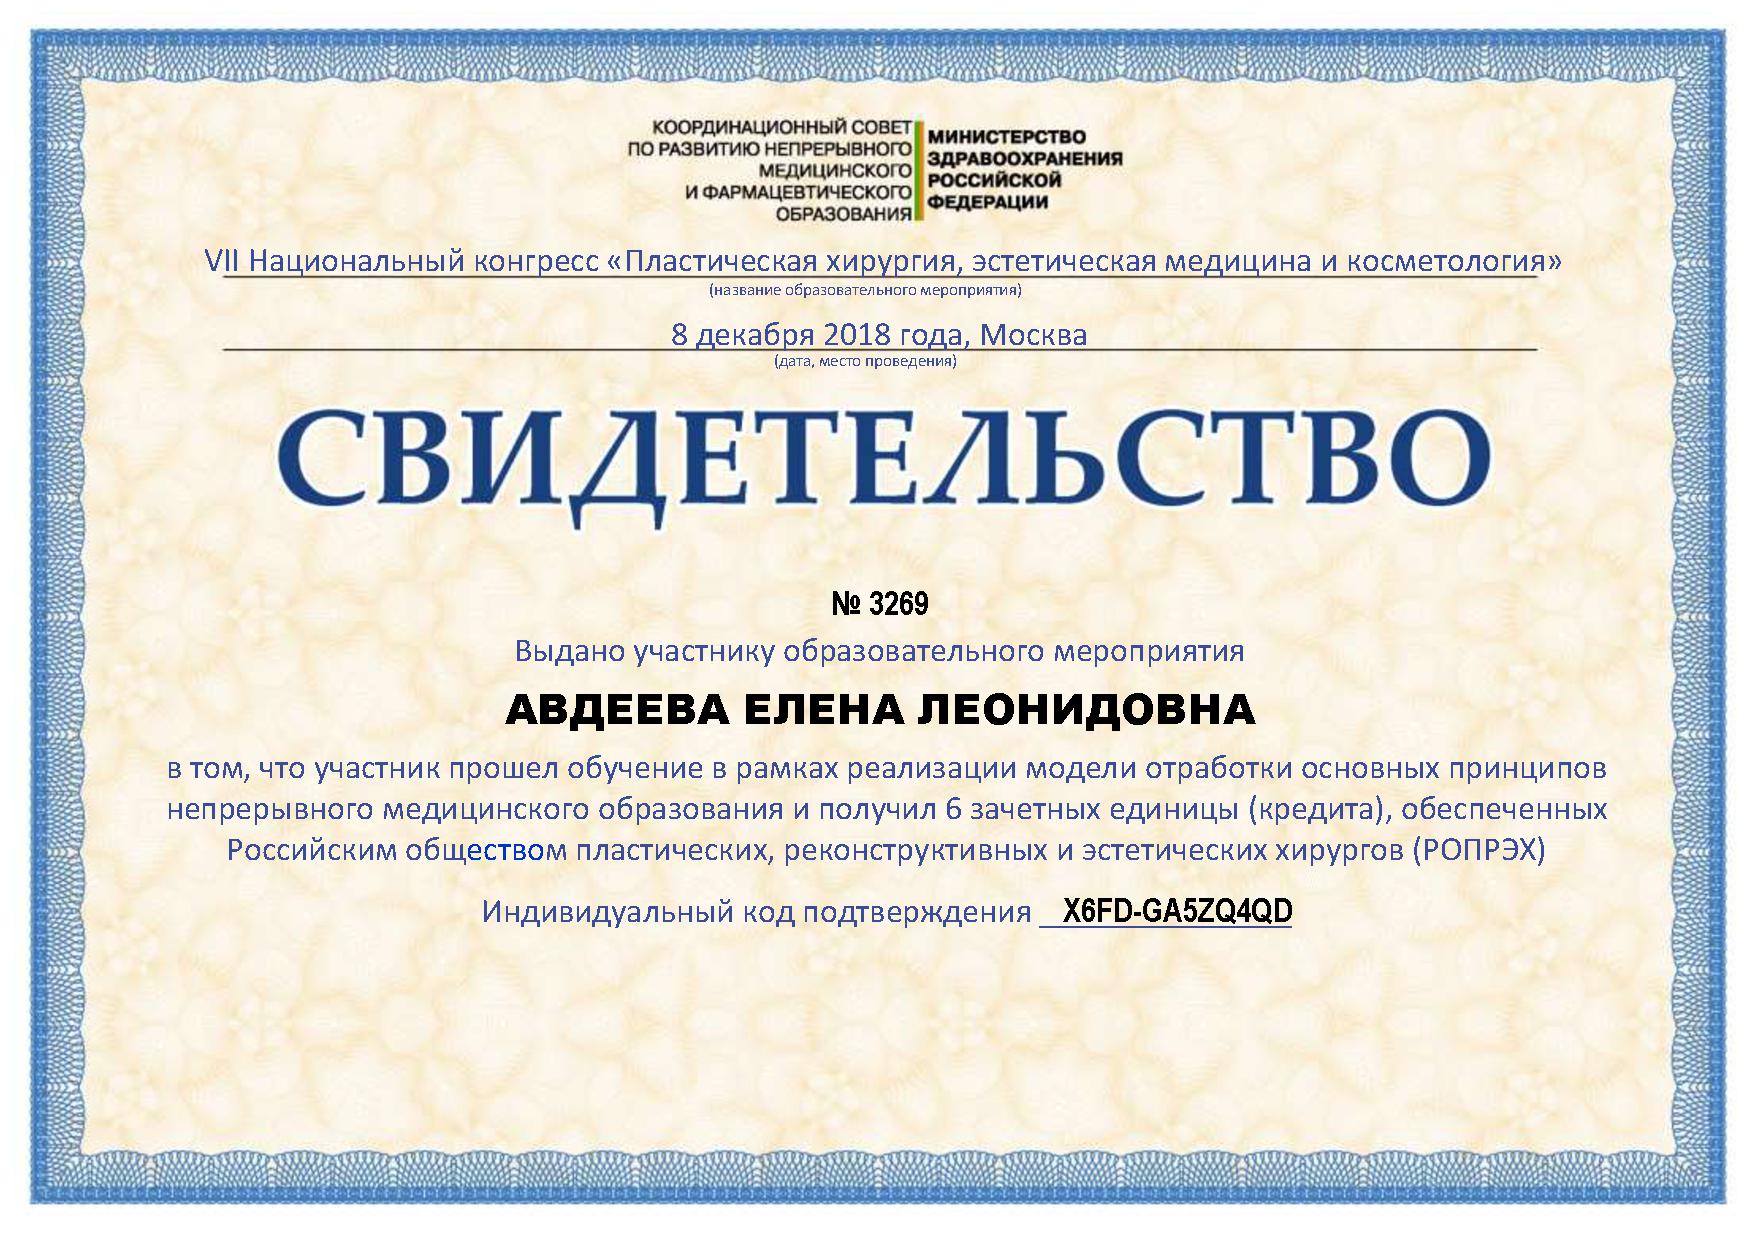 labmed-certificate.jpg